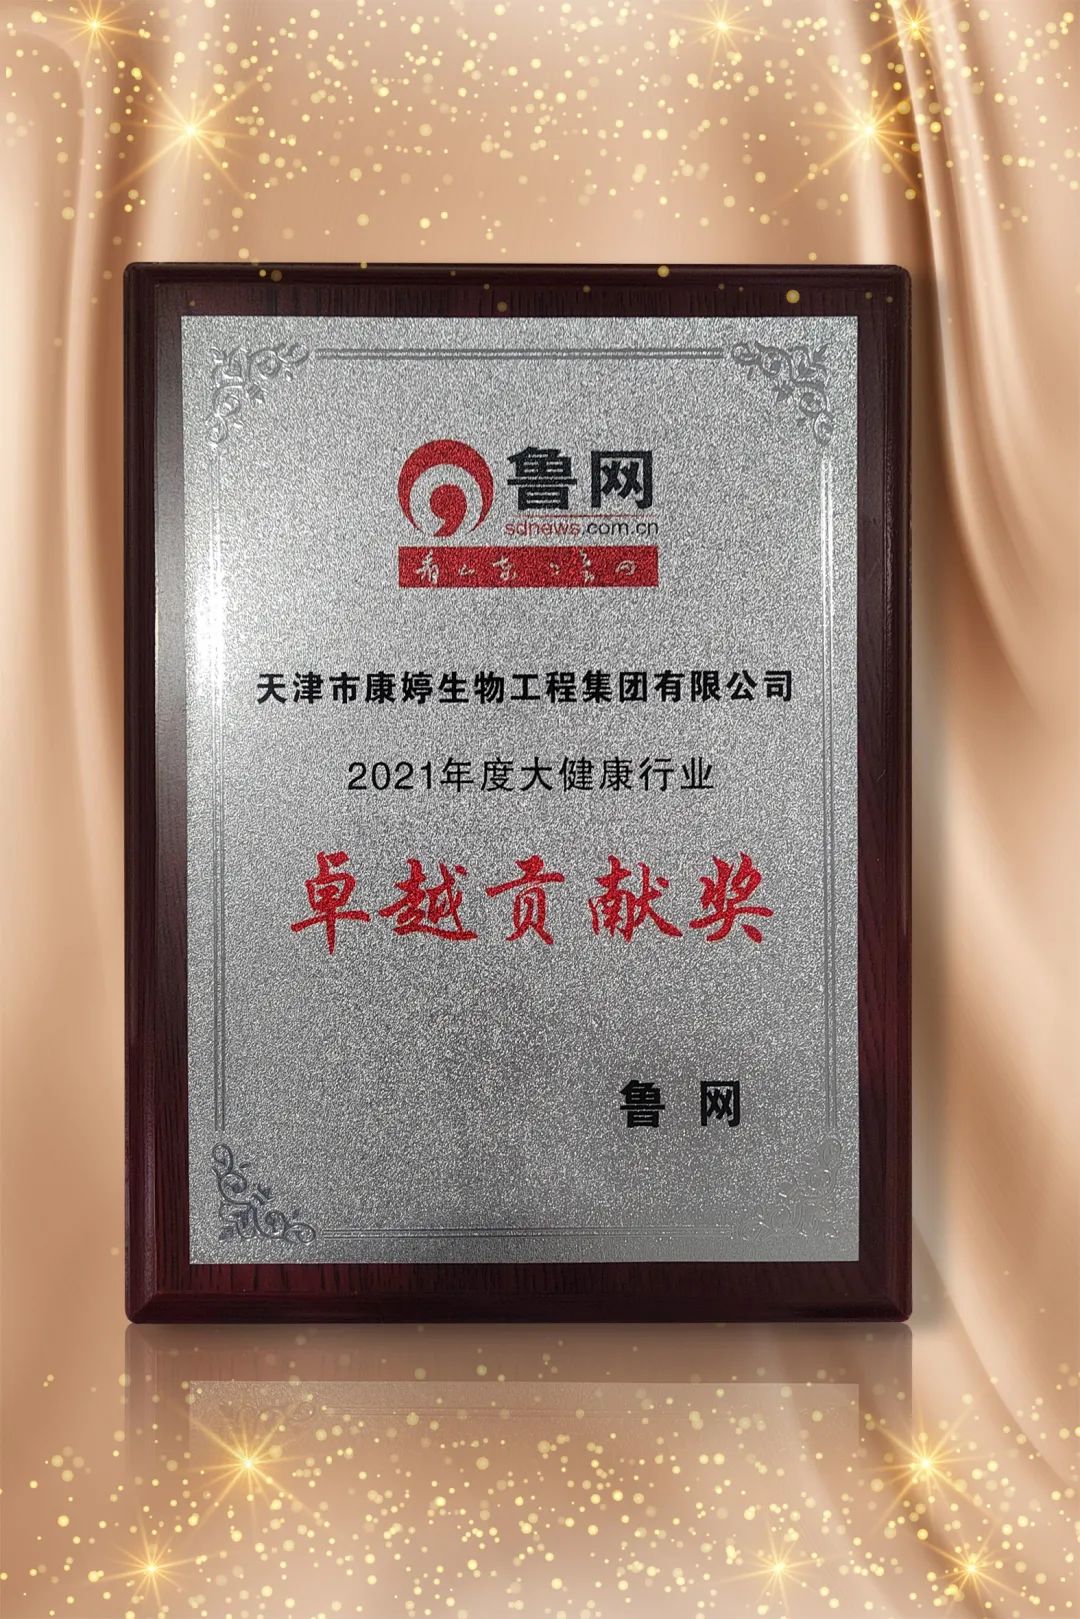 康婷荣获“鲁网2021年度大健康行业卓越贡献奖”